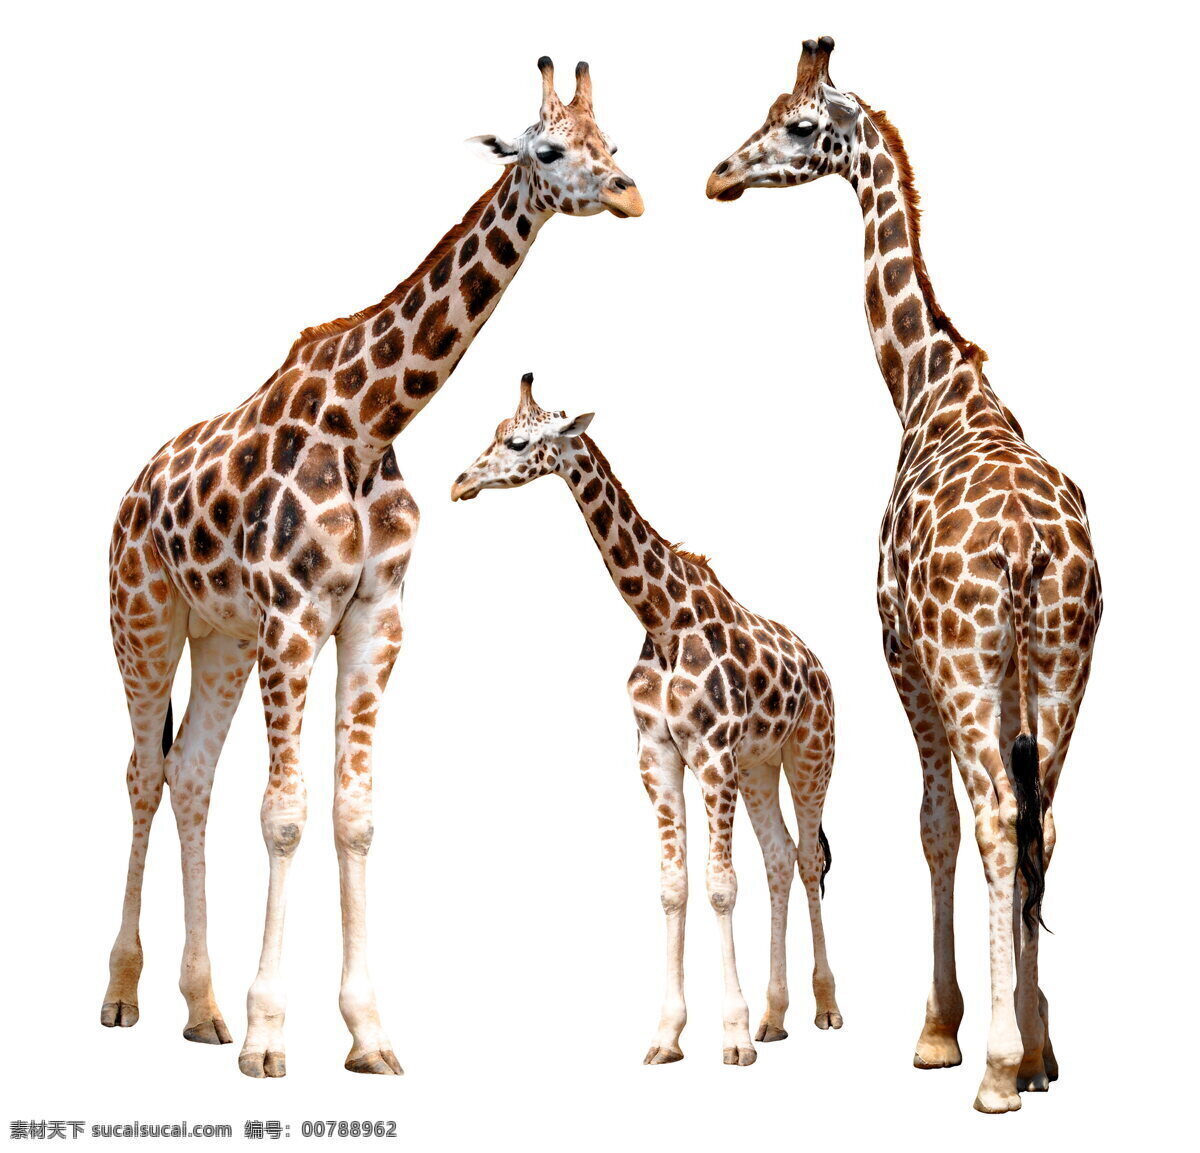 长颈鹿 高清 野生 动物 保护动物 稀有动物 珍贵动物